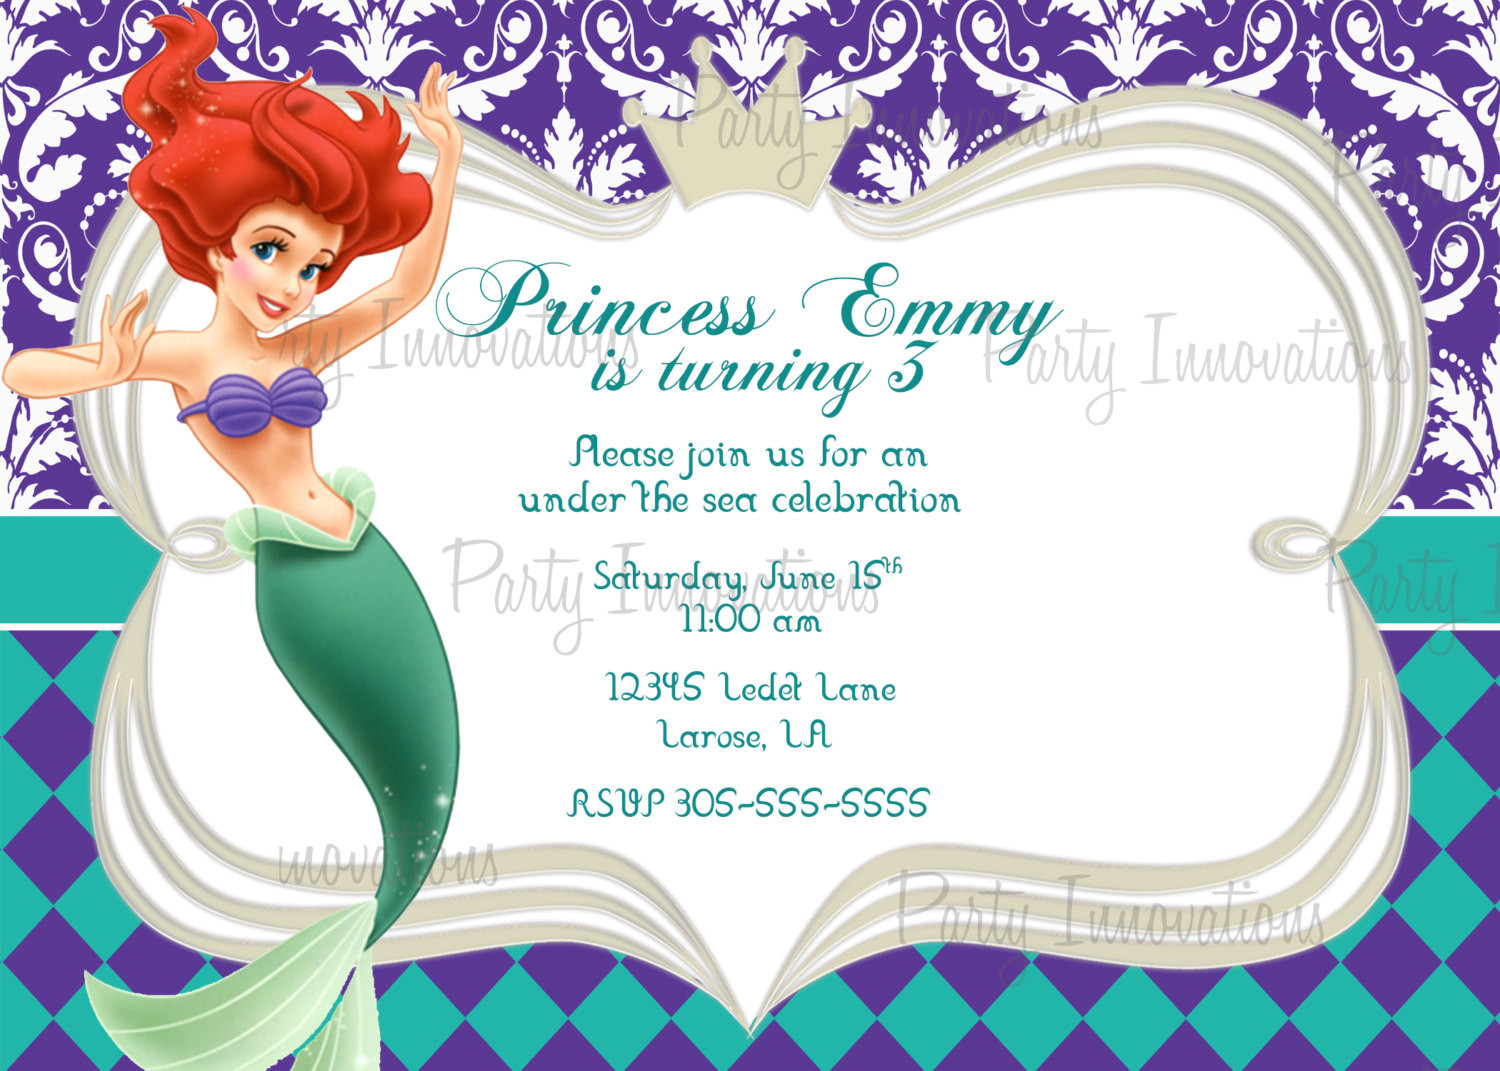 Little Mermaid Party Invitation Ideas
 The Little Mermaid Birthday Invitations